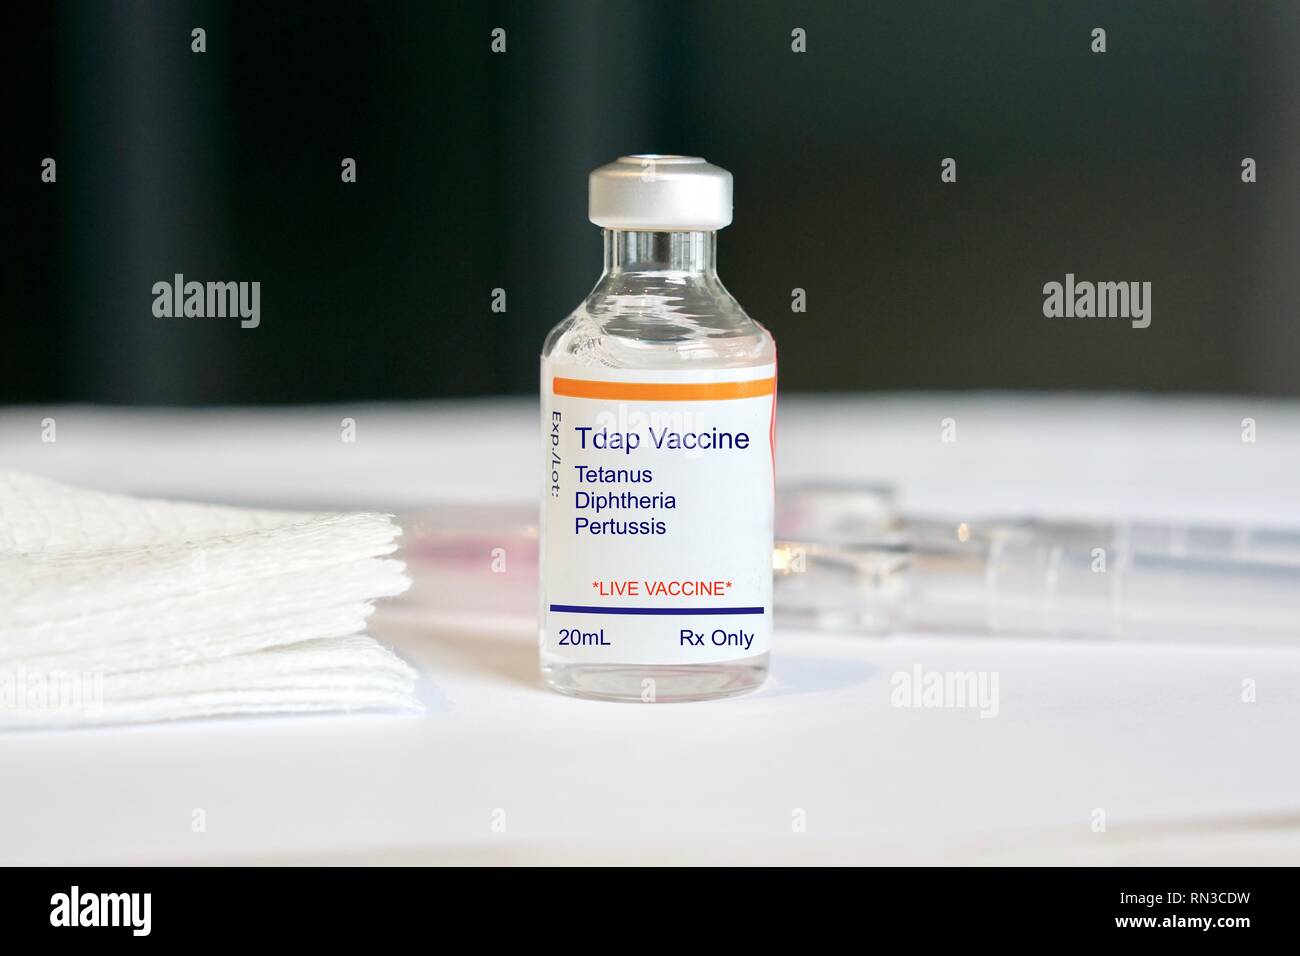 Le vaccin dcat pour le tétanos, la diphtérie et la coqueluche dans un flacon de verre dans un cadre médical Banque D'Images